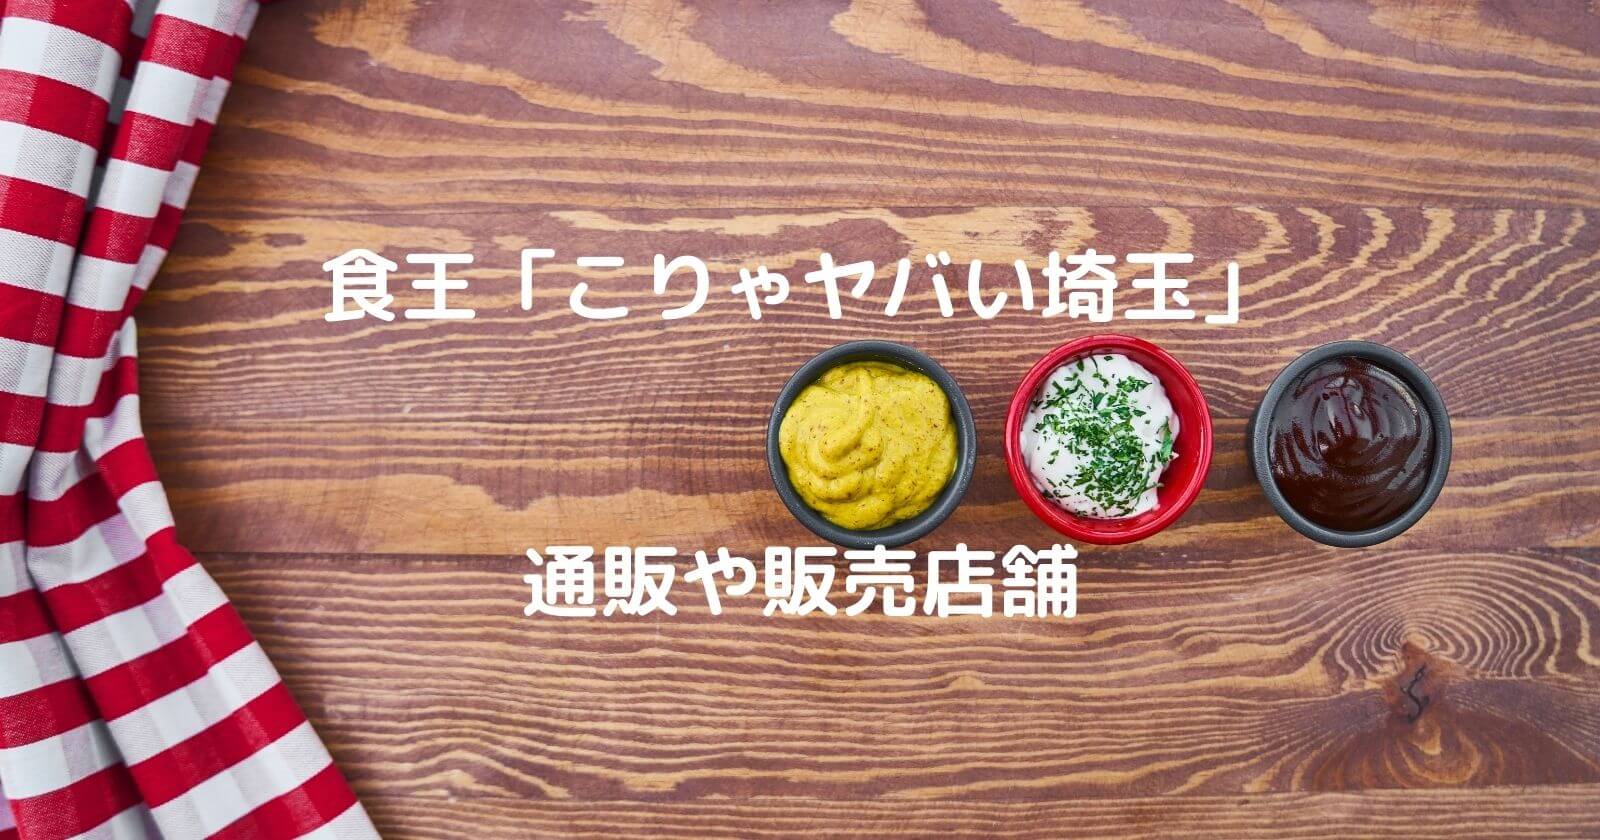 食王「こりゃヤバい埼玉」の通販・販売店舗